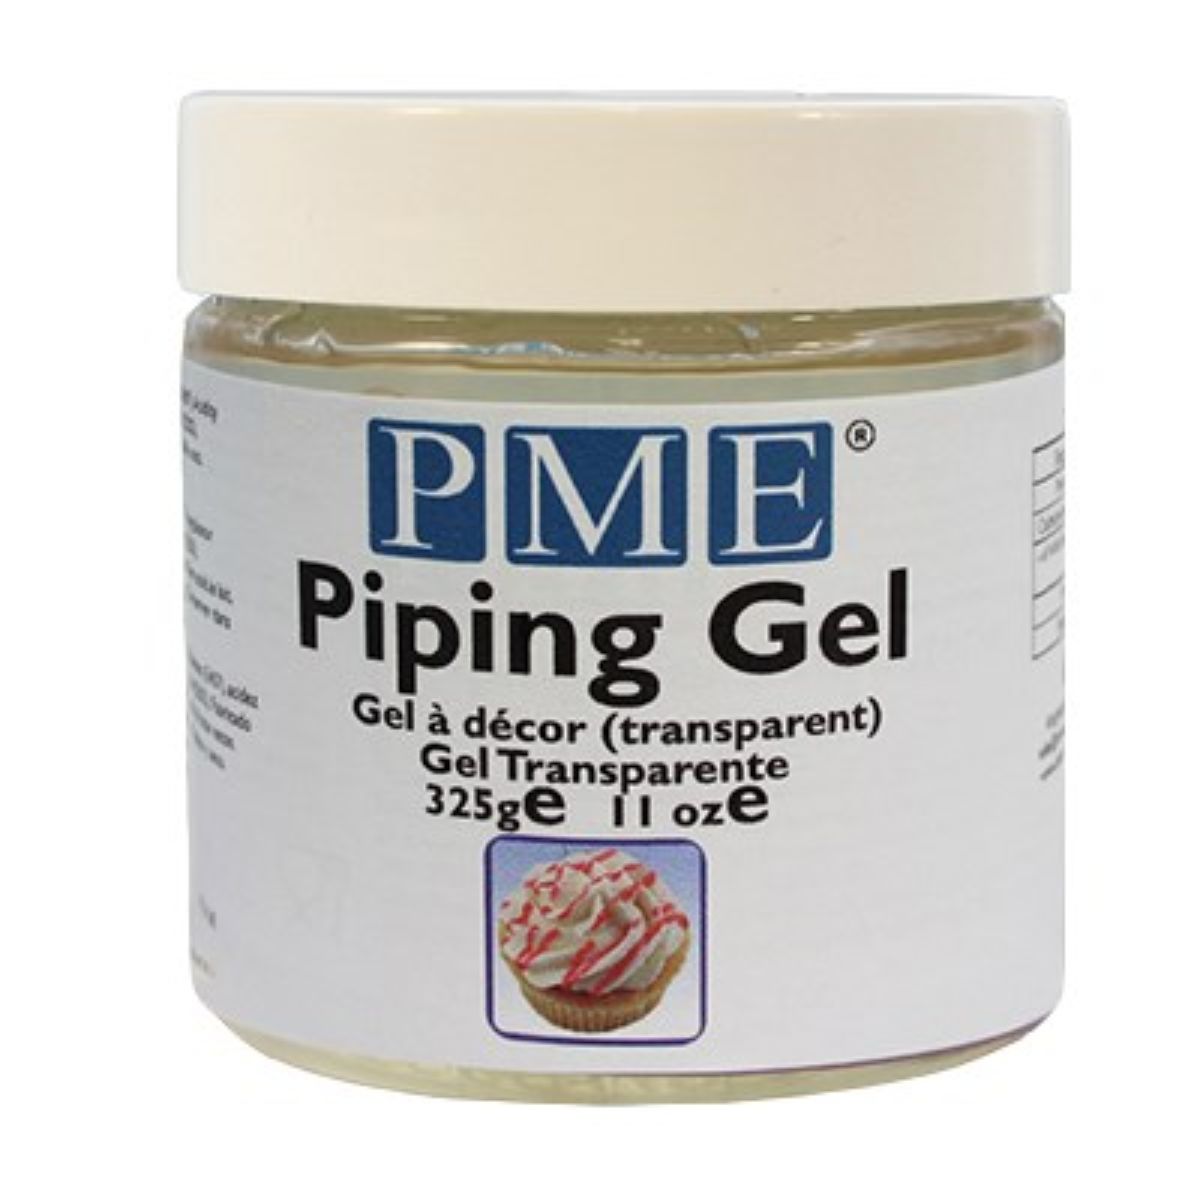 PME Piping Gel 11.4oz